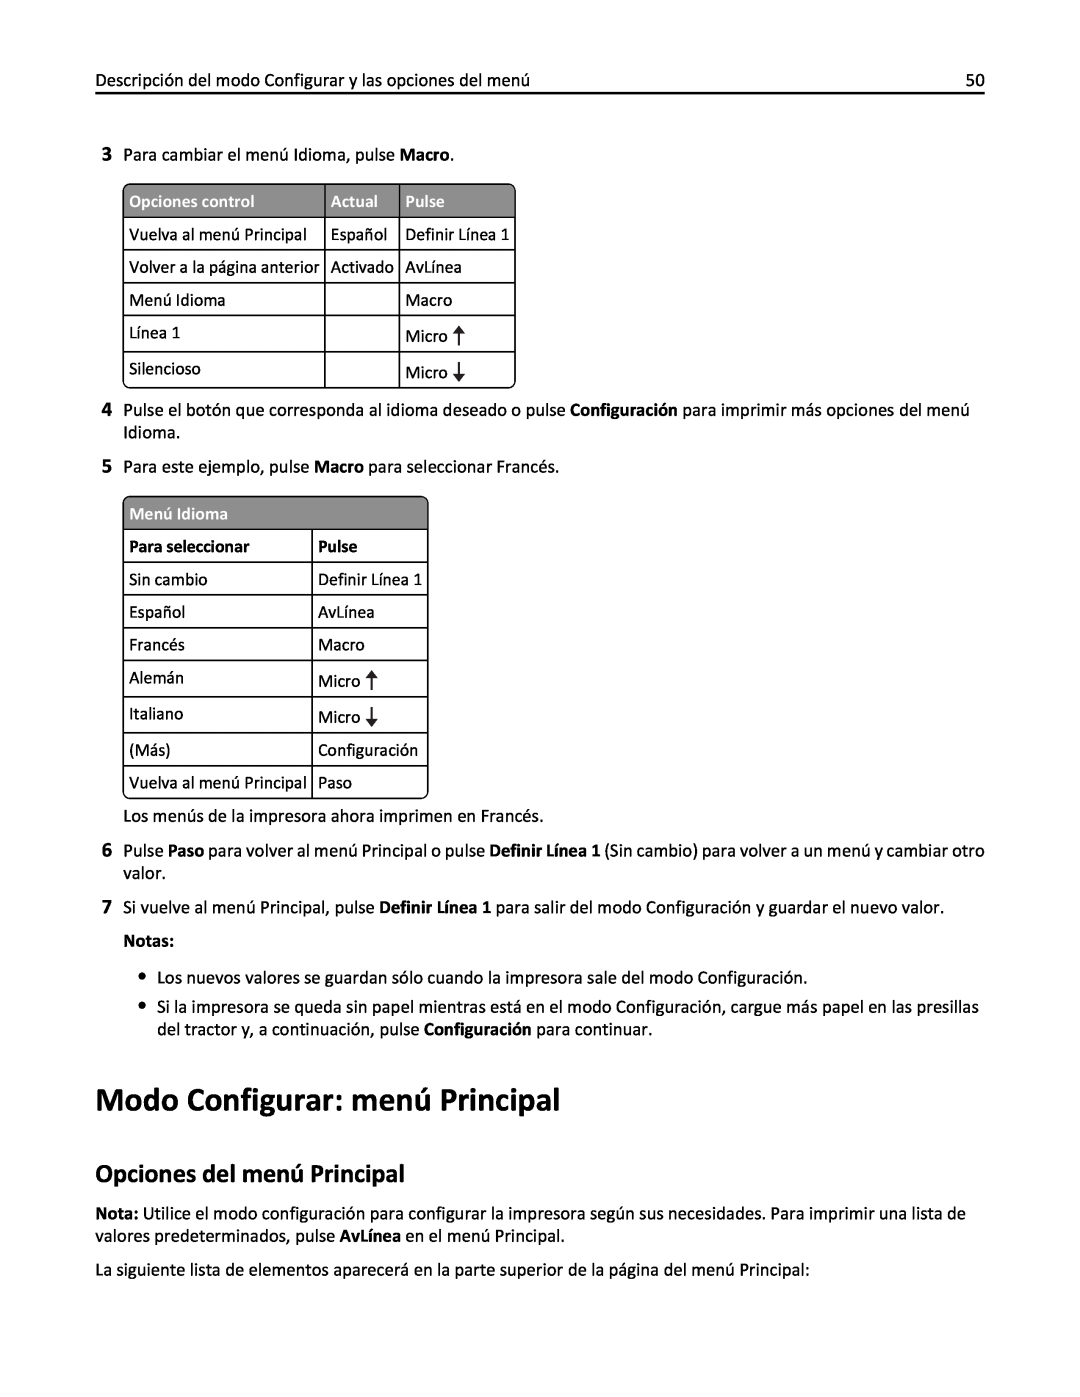 Lexmark 2500 manual Modo Configurar menú Principal, Opciones del menú Principal 